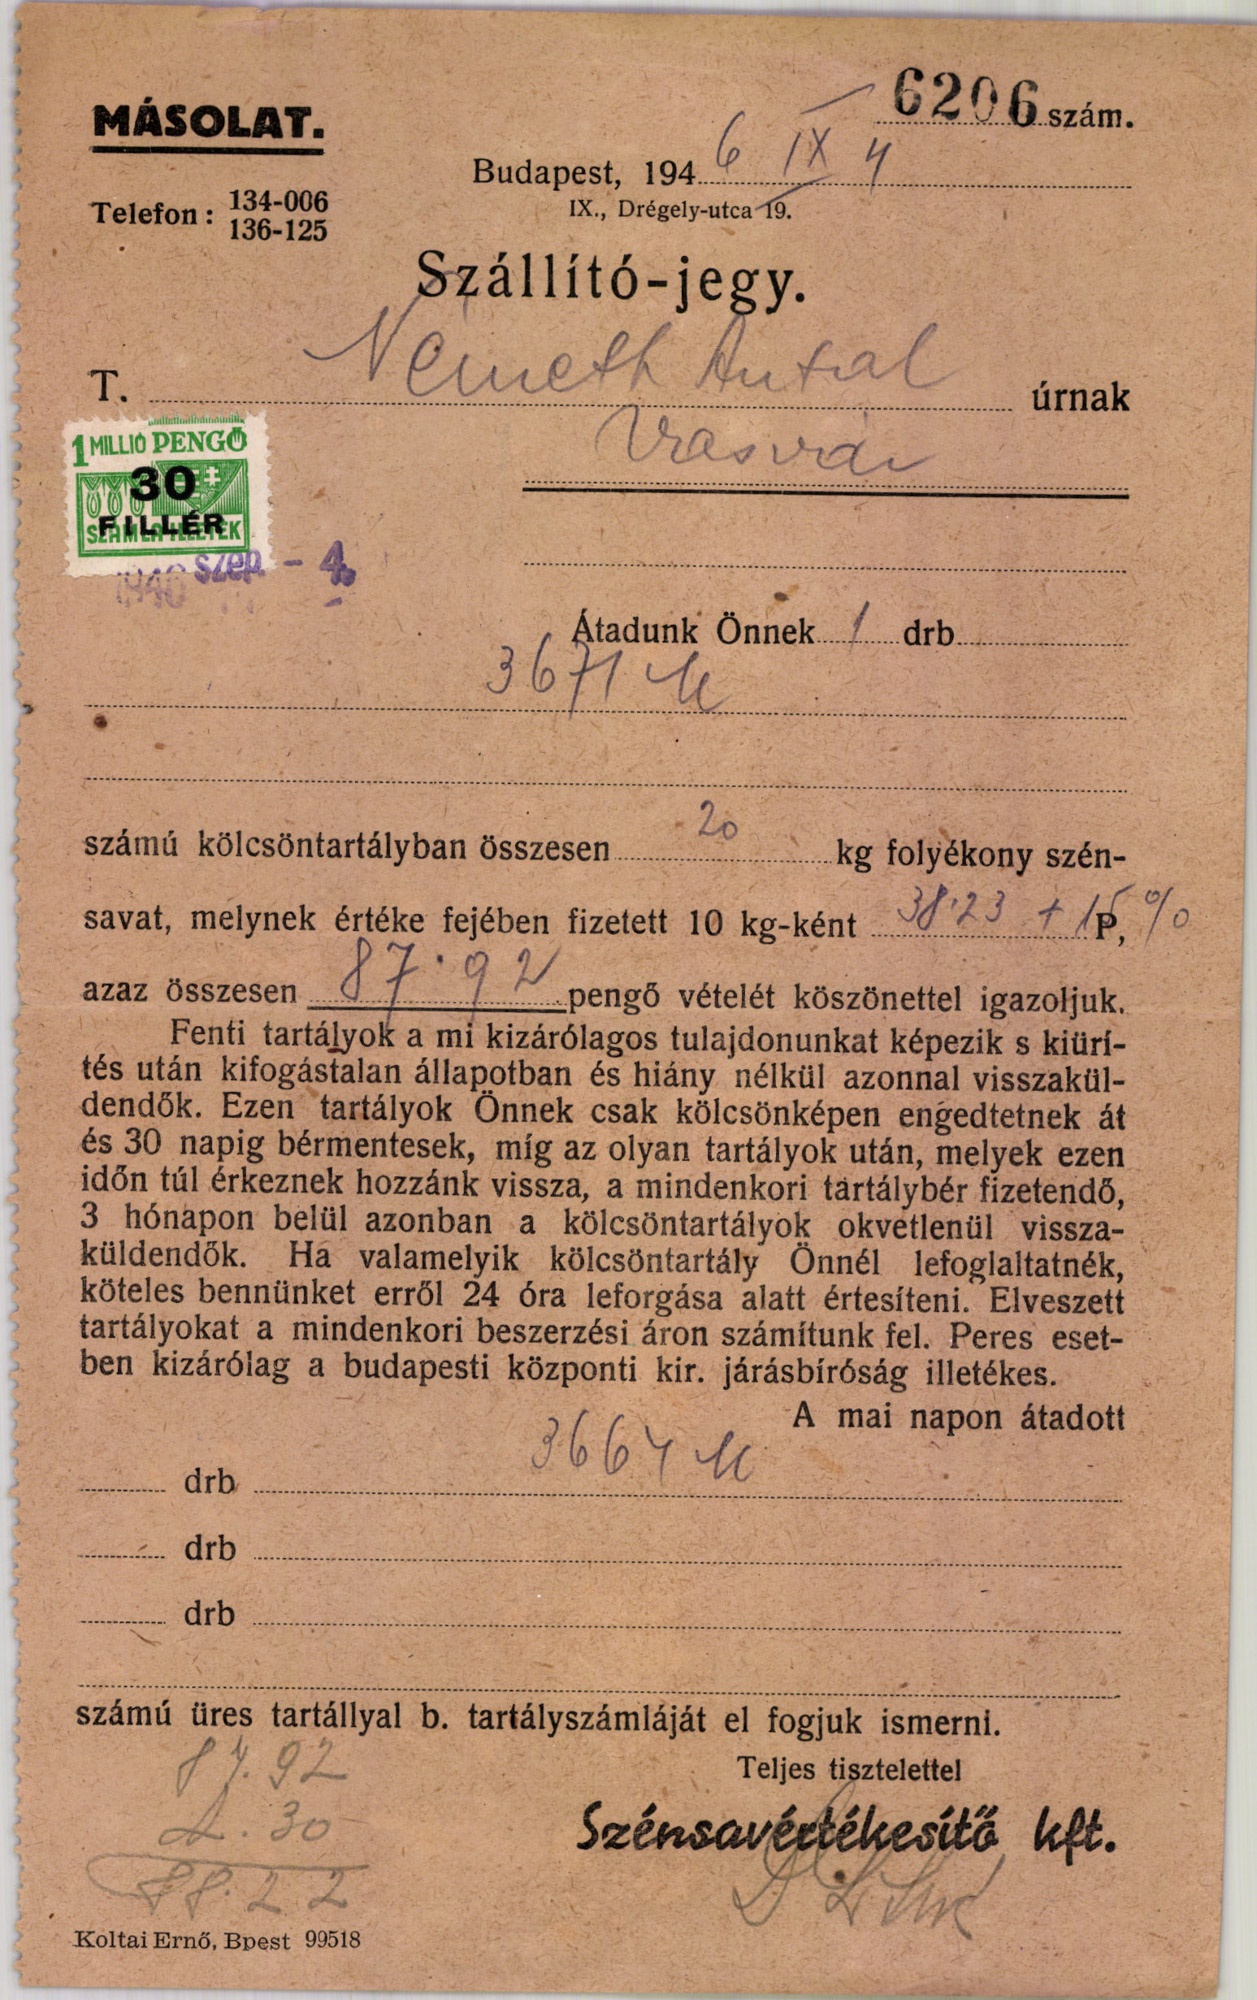 Szénsavértékesítő Kft. szállító-jegy (Magyar Kereskedelmi és Vendéglátóipari Múzeum CC BY-NC-SA)